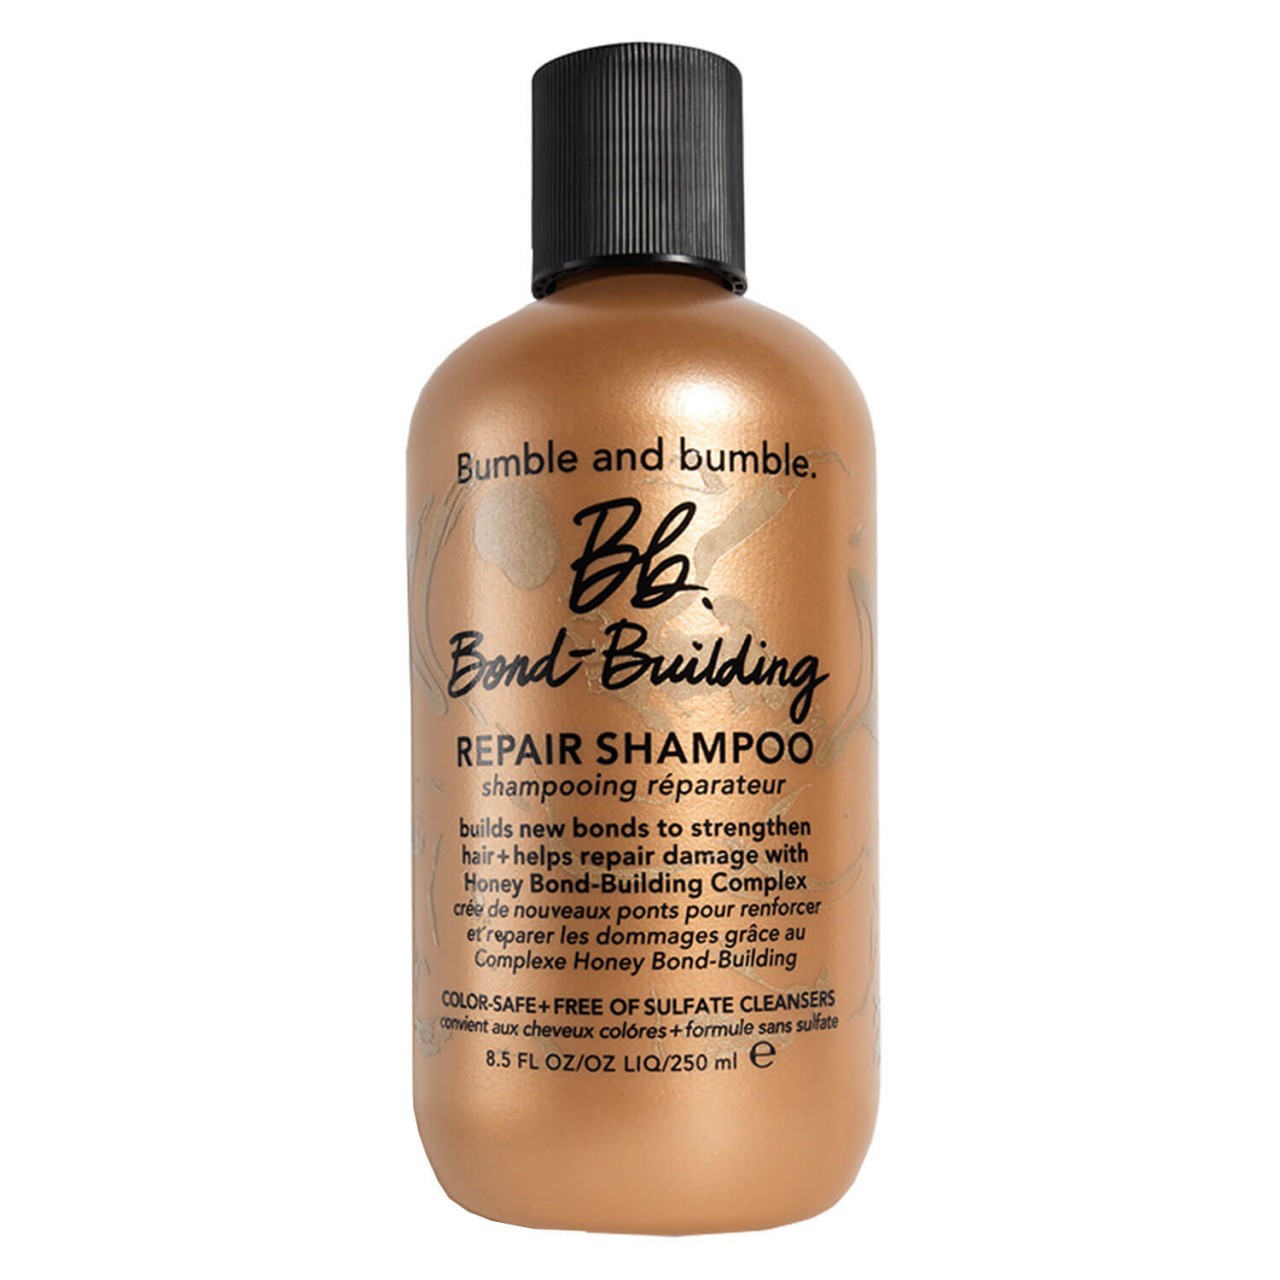 Bb. Bond-Building - Repair Shampoo von Bumble and bumble.